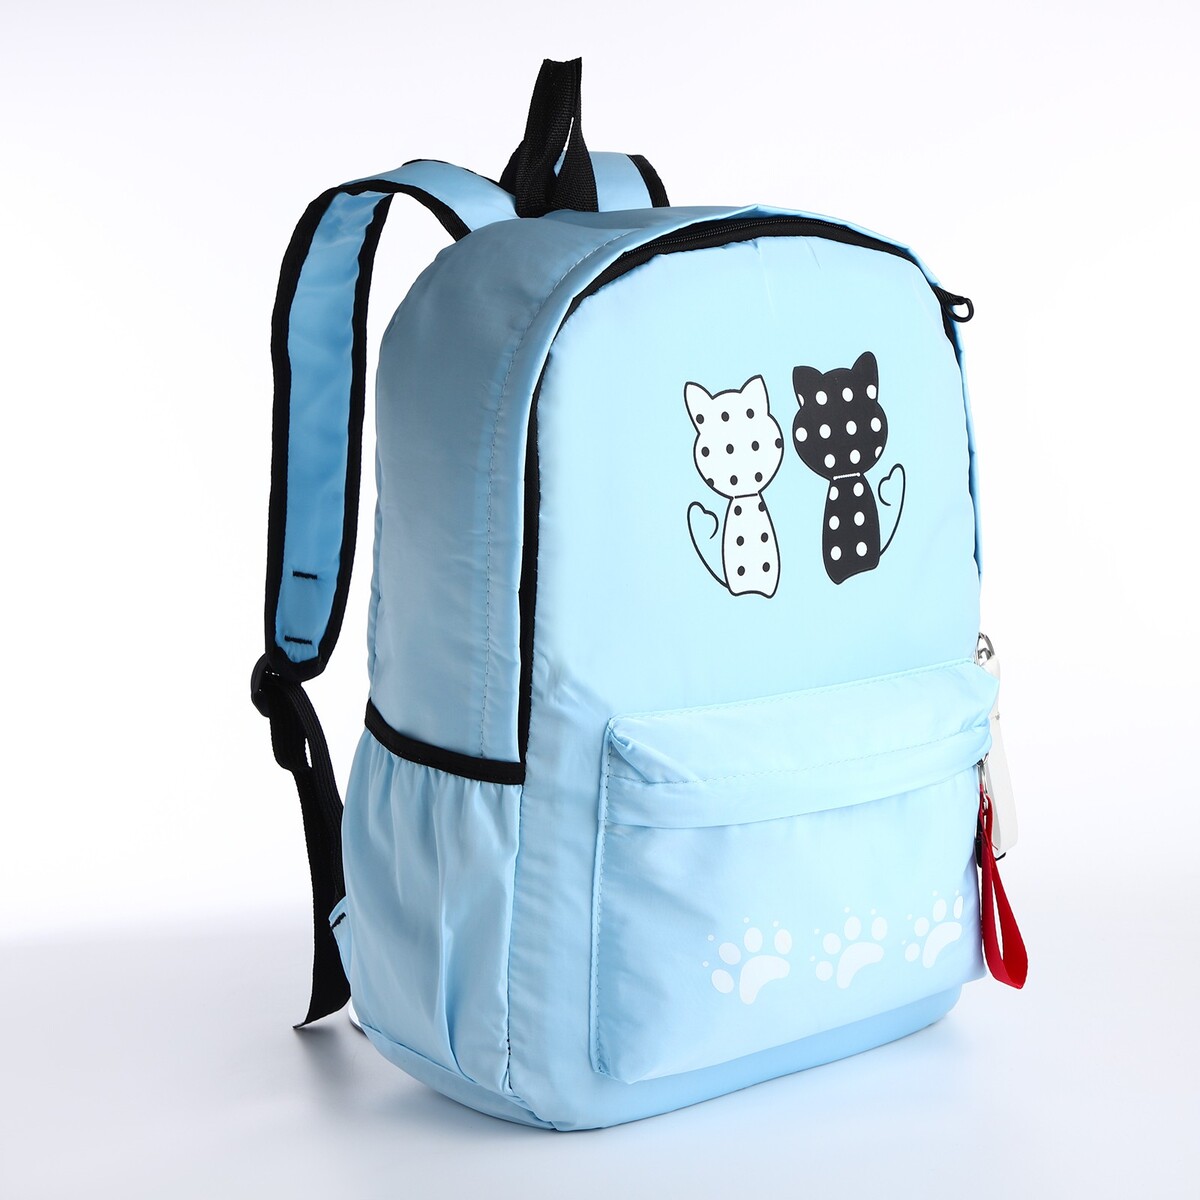 Рюкзак молодежный из текстиля, 3 кармана, кошелек, цвет голубой